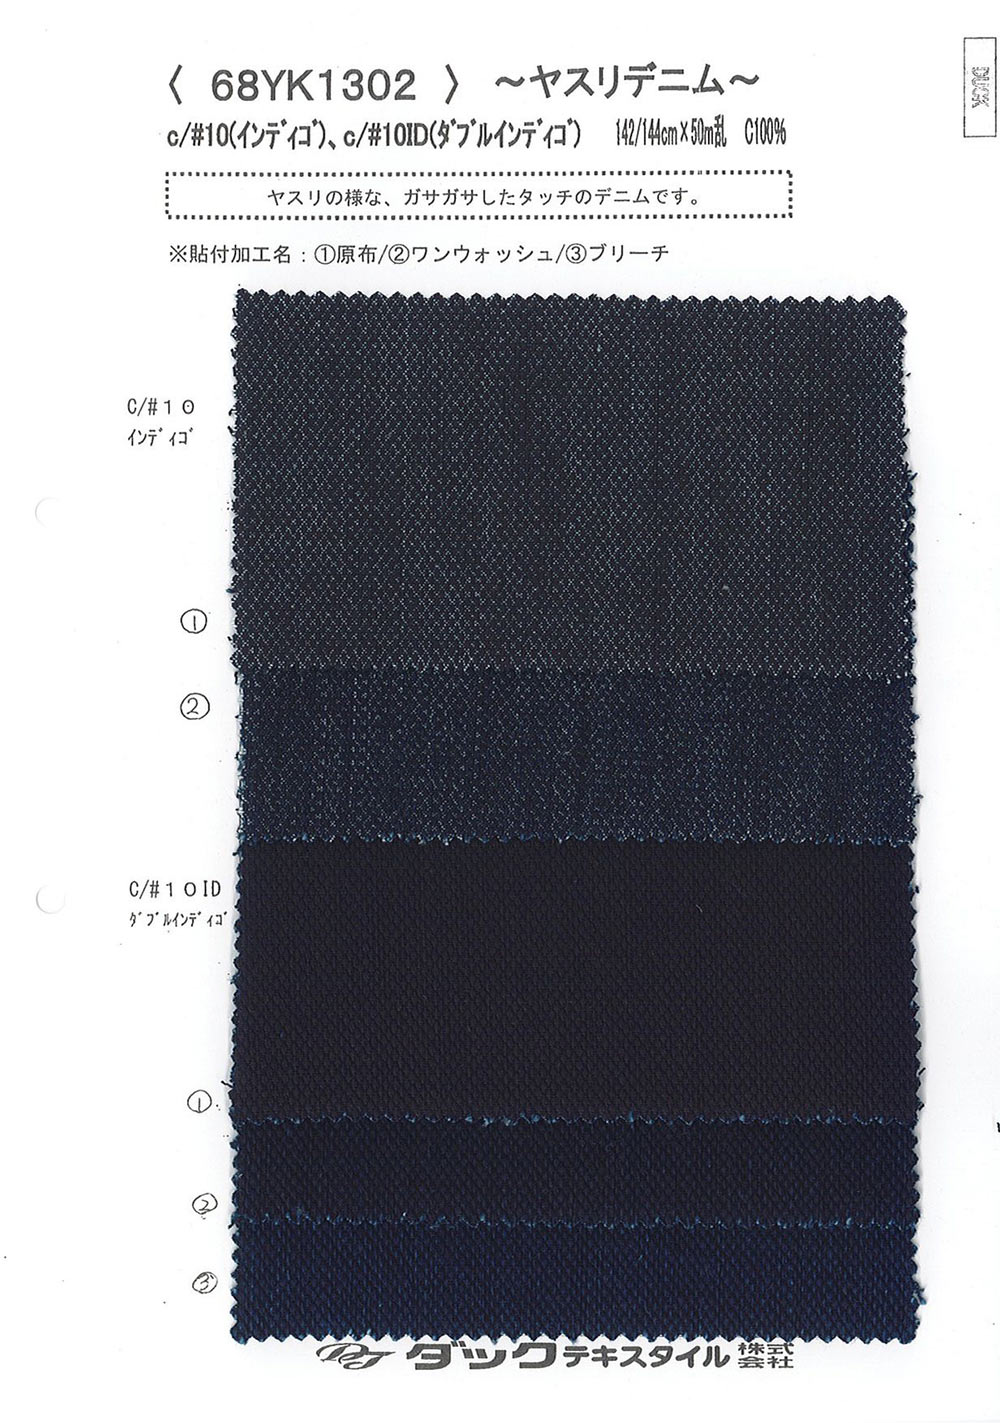 68YK1302 Datei Denim[Textilgewebe] DUCK TEXTILE